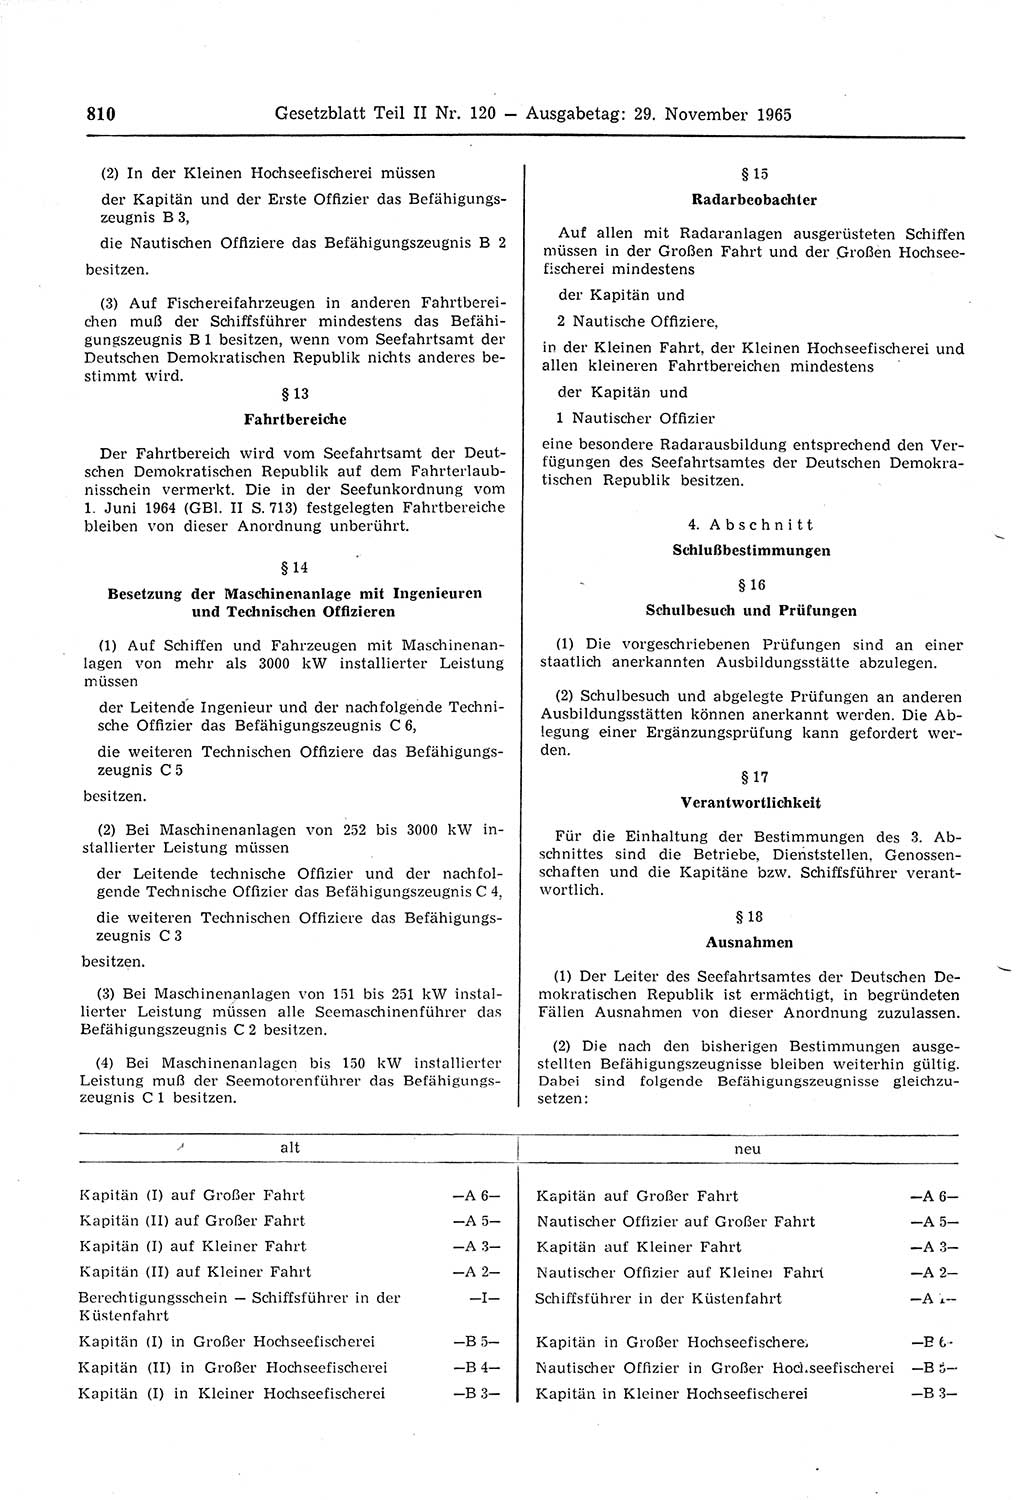 Gesetzblatt (GBl.) der Deutschen Demokratischen Republik (DDR) Teil ⅠⅠ 1965, Seite 810 (GBl. DDR ⅠⅠ 1965, S. 810)